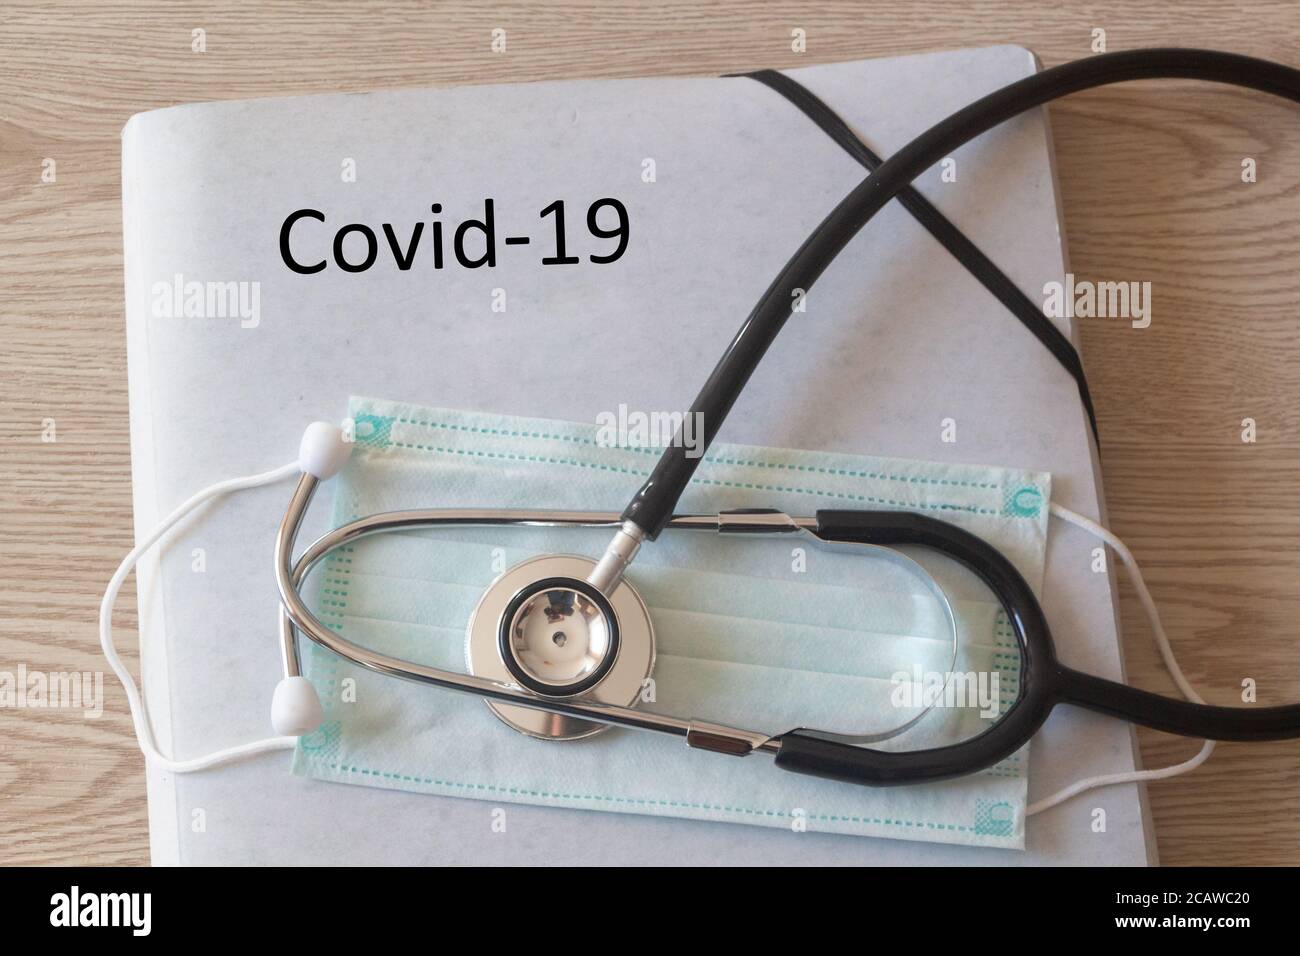 Dossier avec Covid-19 écrit dessus, masque médical et stéthoscope Banque D'Images